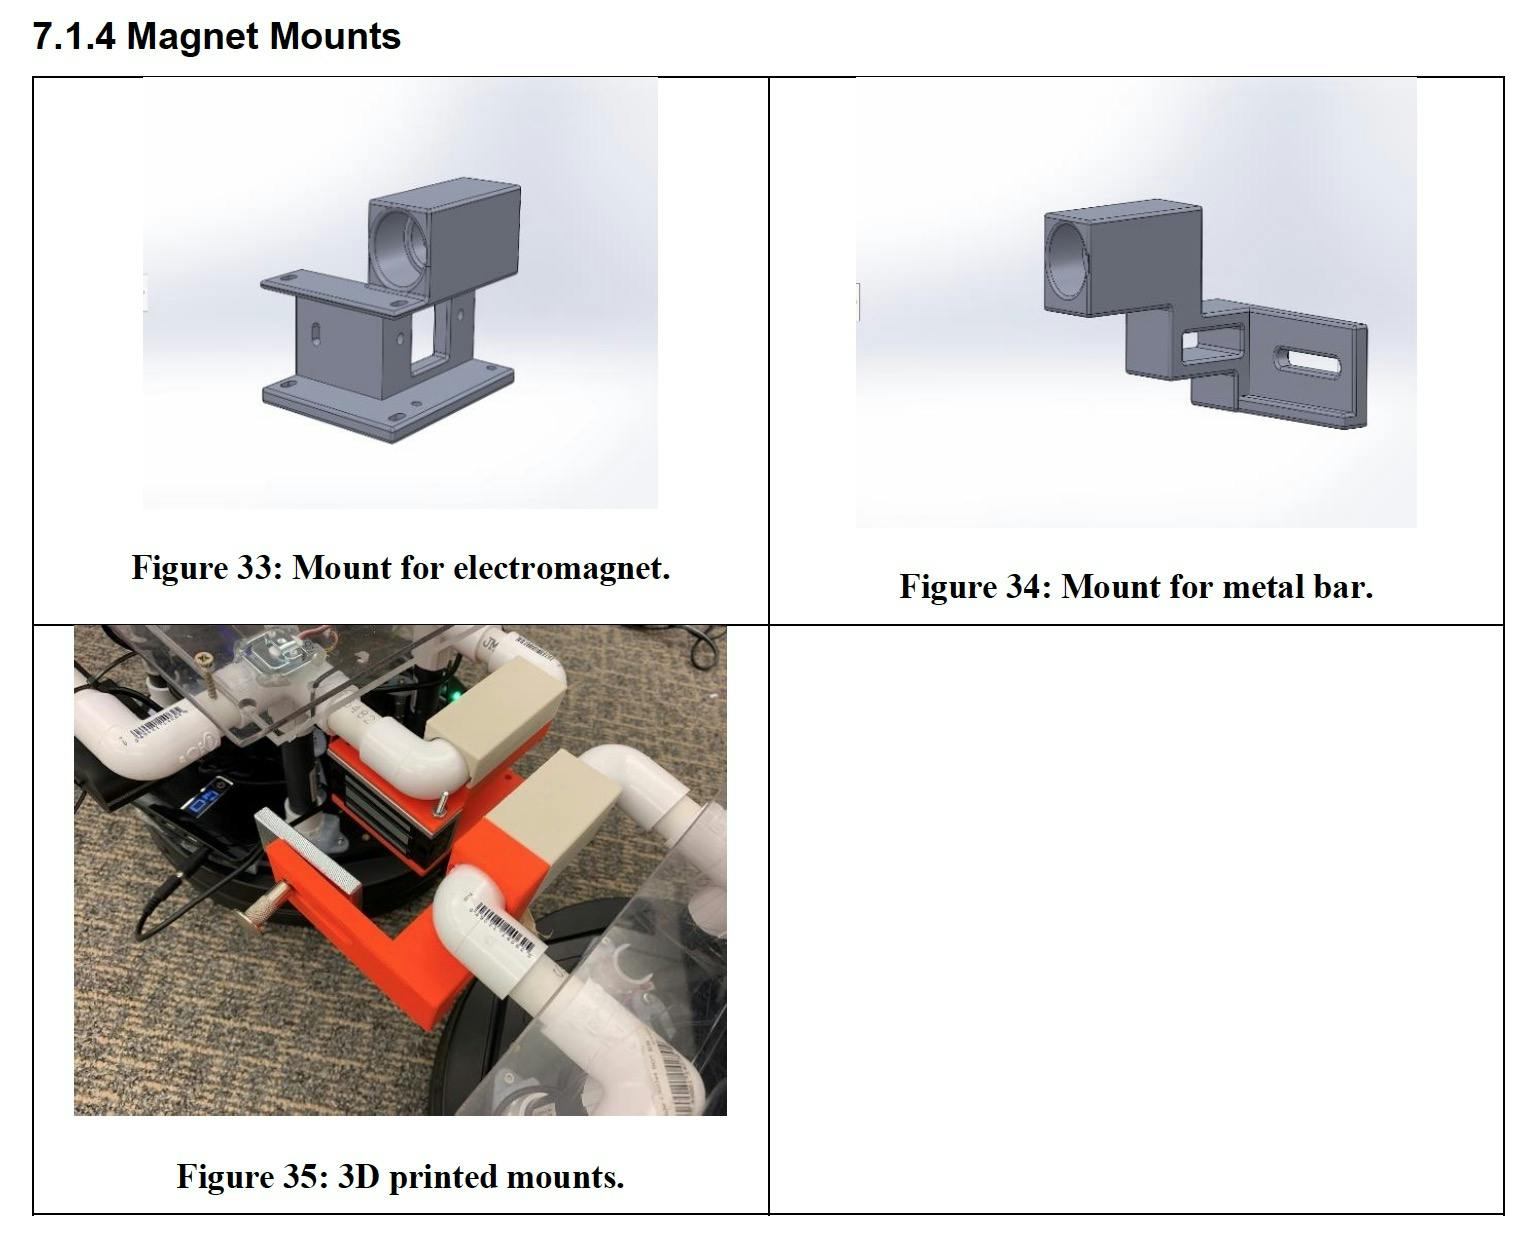 Magnet Mount